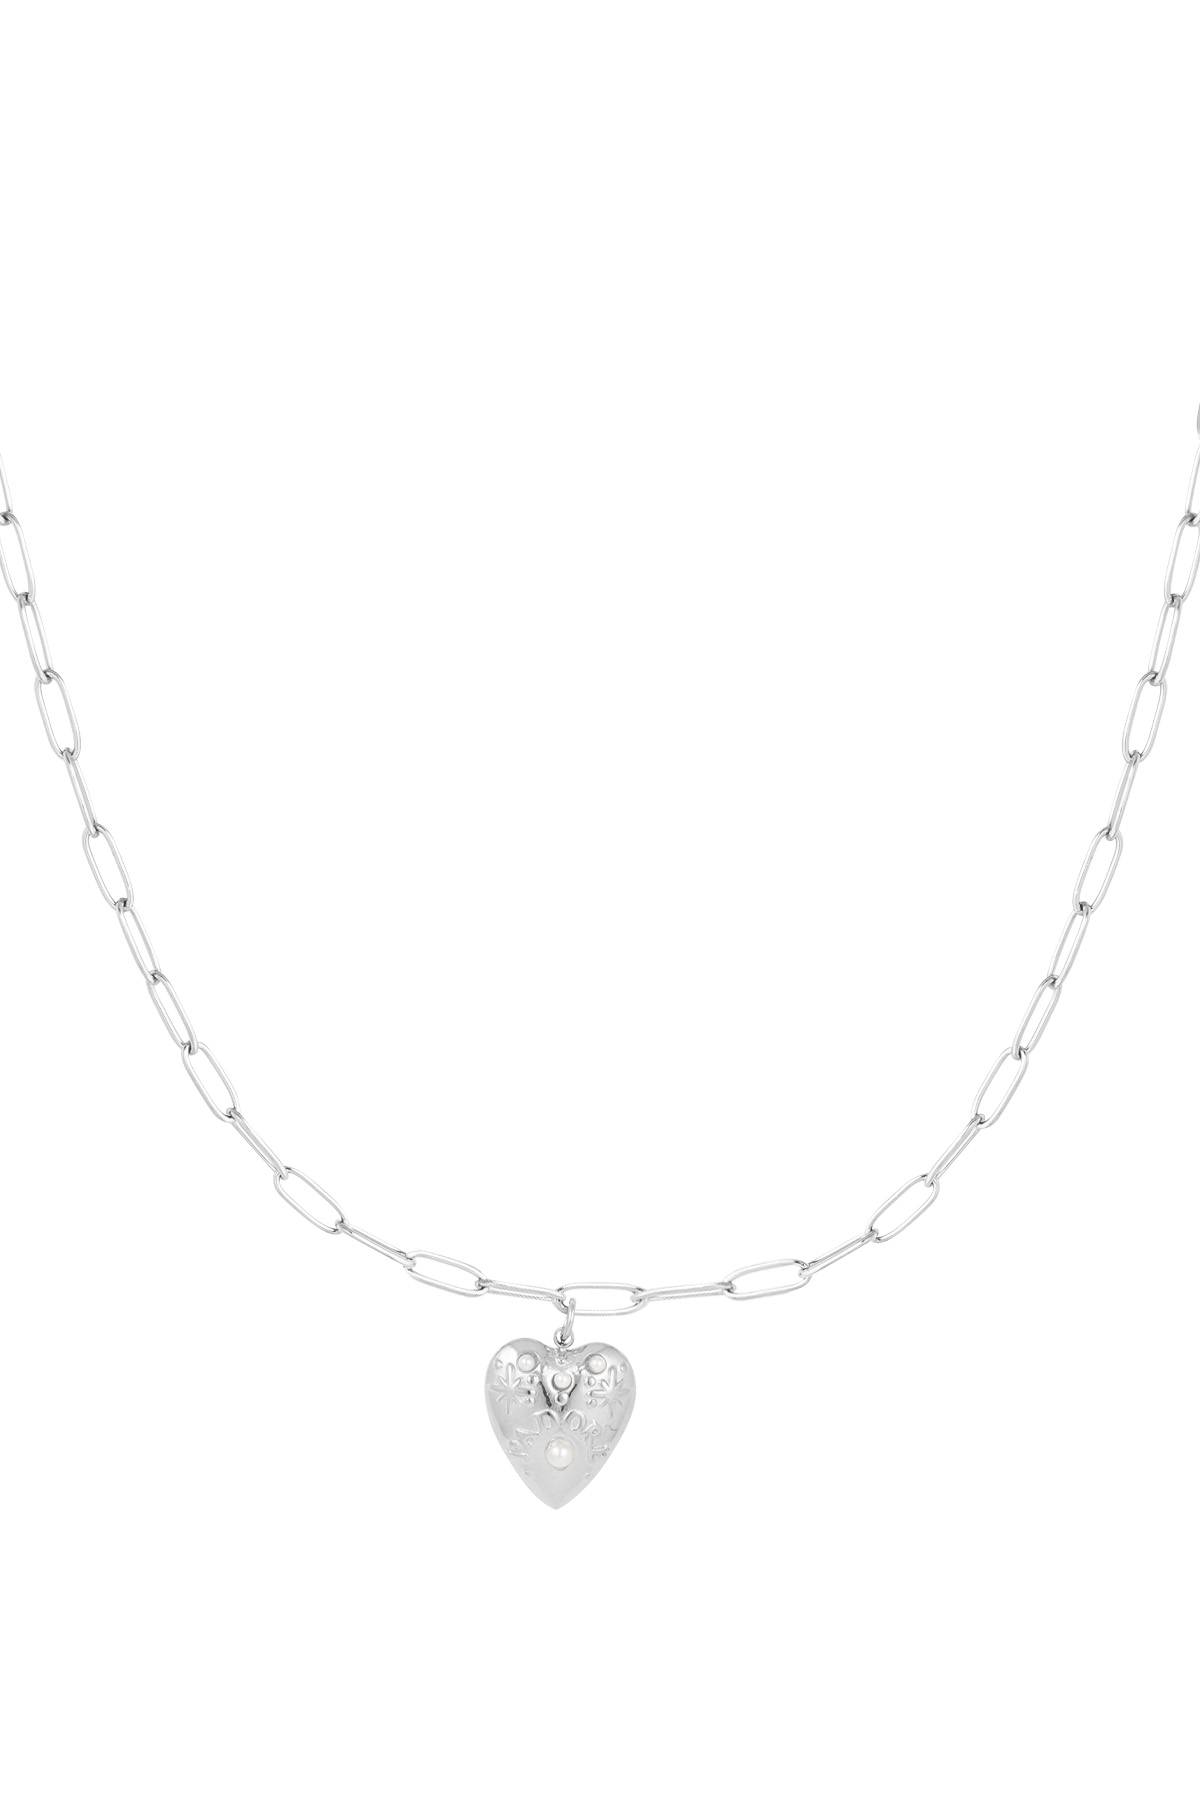 Halskette Herz aus Silber - silber